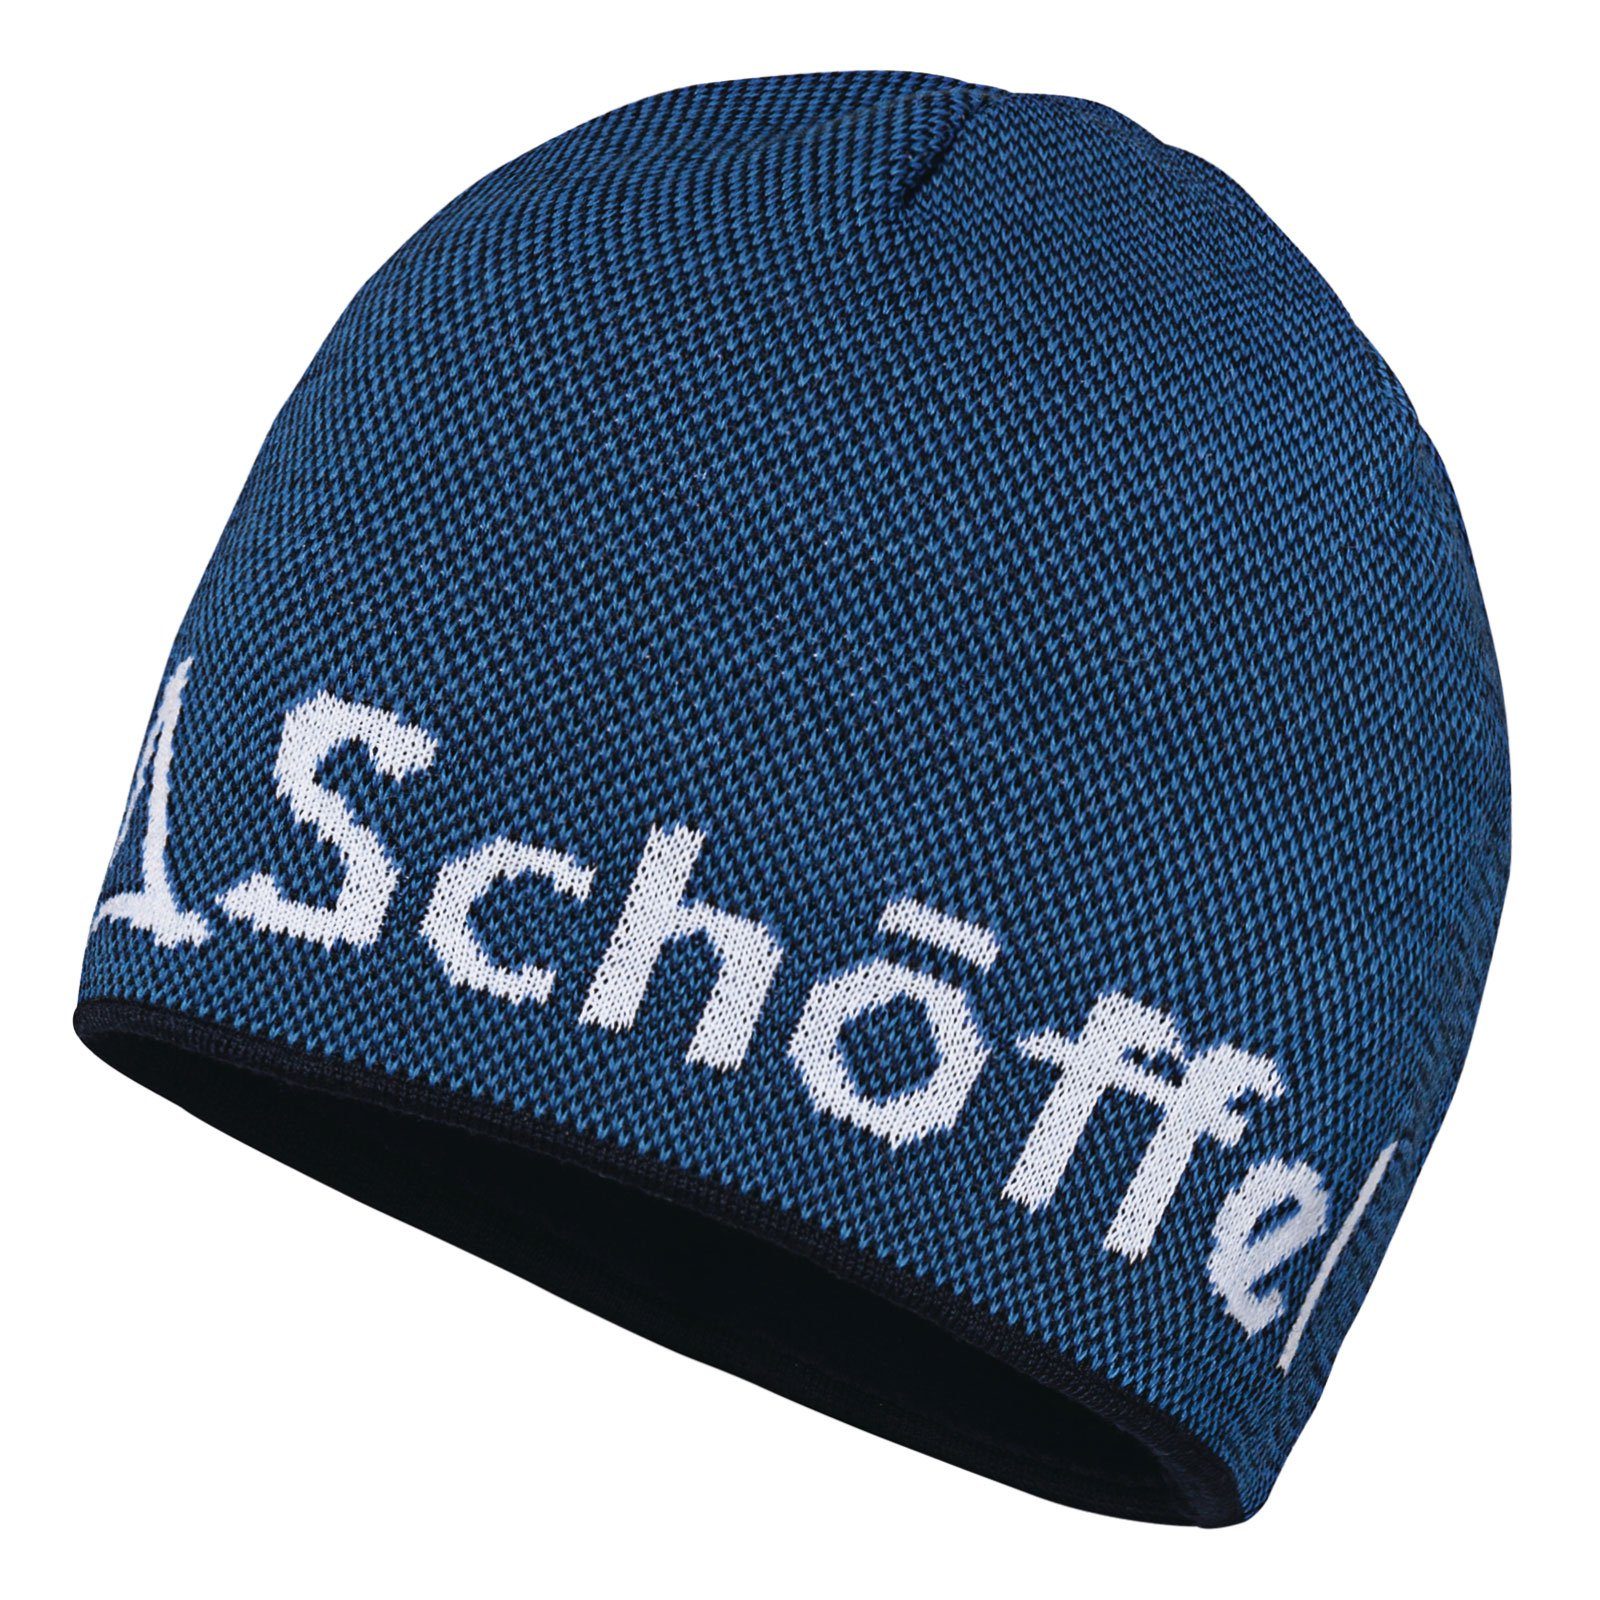 Schoeffel Schöffel Strickmütze Knitted Hat Klinovec mit eingestricktem Schöffel-Logo 8320 directoire blue